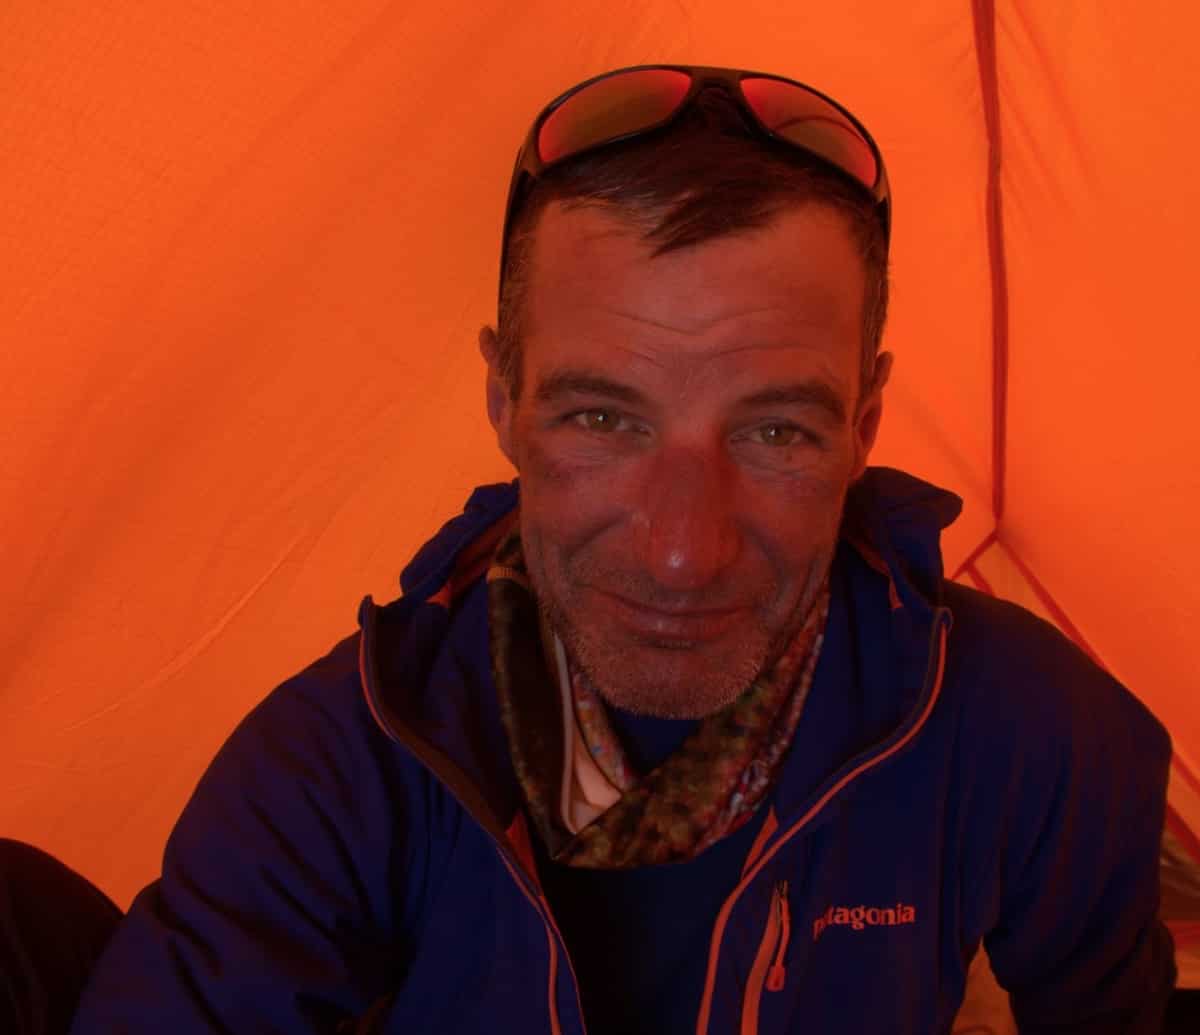 L'alpinista italiano Giampaolo Corona disperso sull'Annapurna, in Nepal. Scala senza ossigeno né portatori